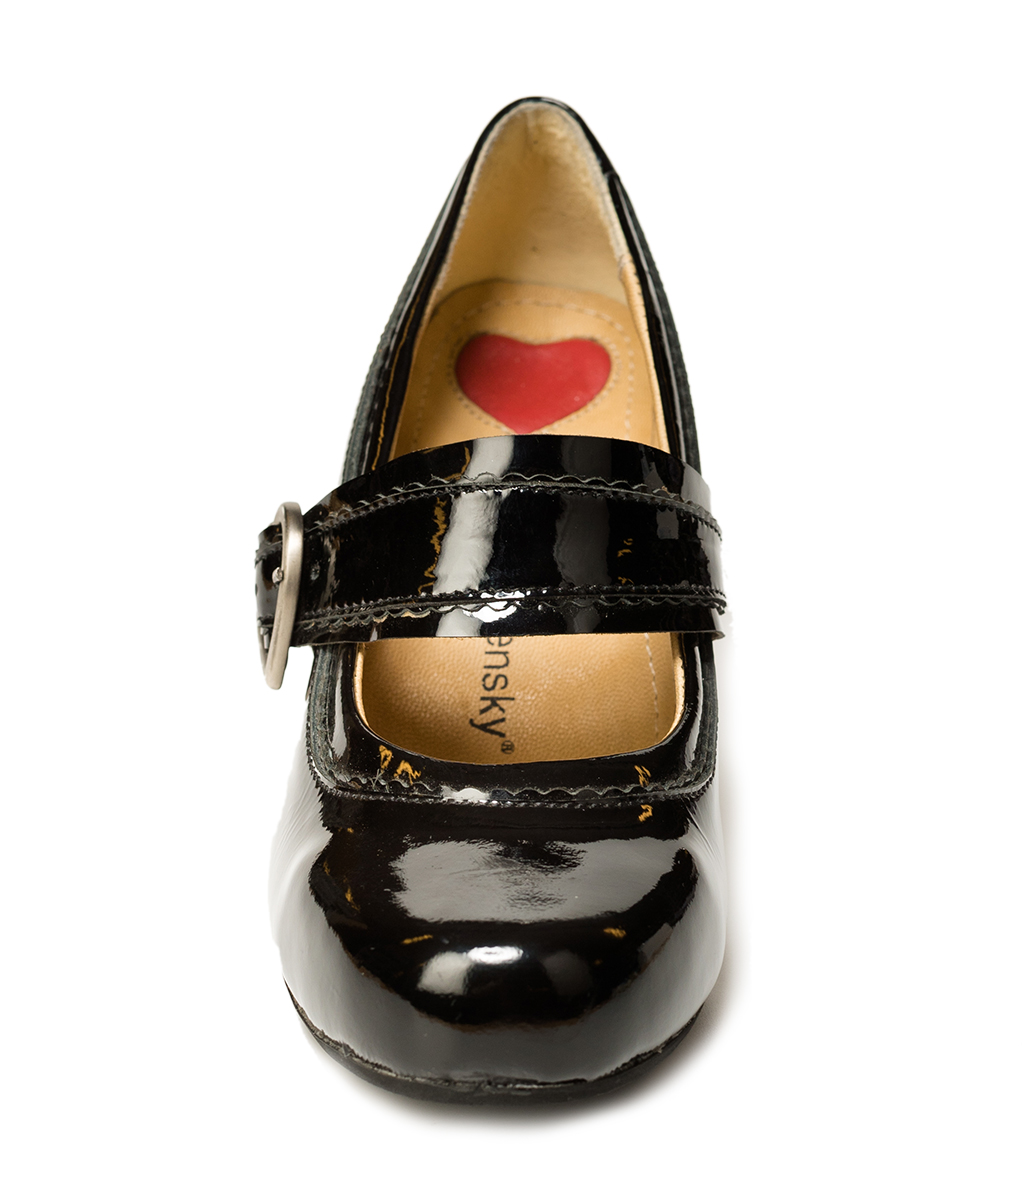 weitere Bilder von Traditional dirndl shoes D450 Ibis Lack black